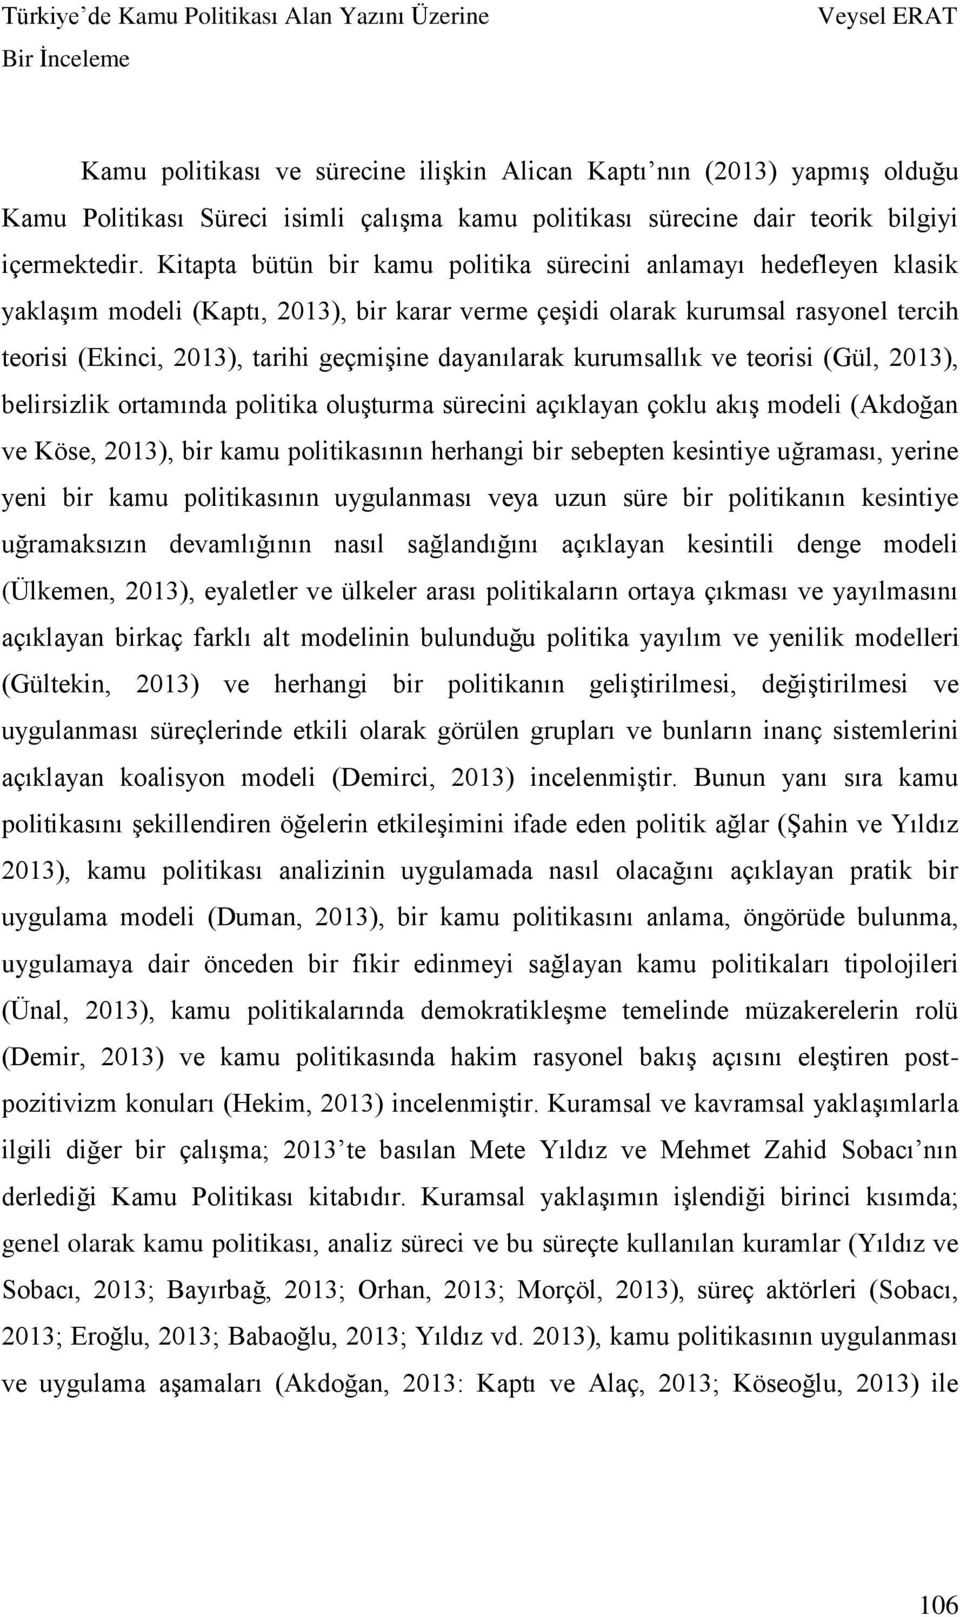 dayanılarak kurumsallık ve teorisi (Gül, 2013), belirsizlik ortamında politika oluşturma sürecini açıklayan çoklu akış modeli (Akdoğan ve Köse, 2013), bir kamu politikasının herhangi bir sebepten